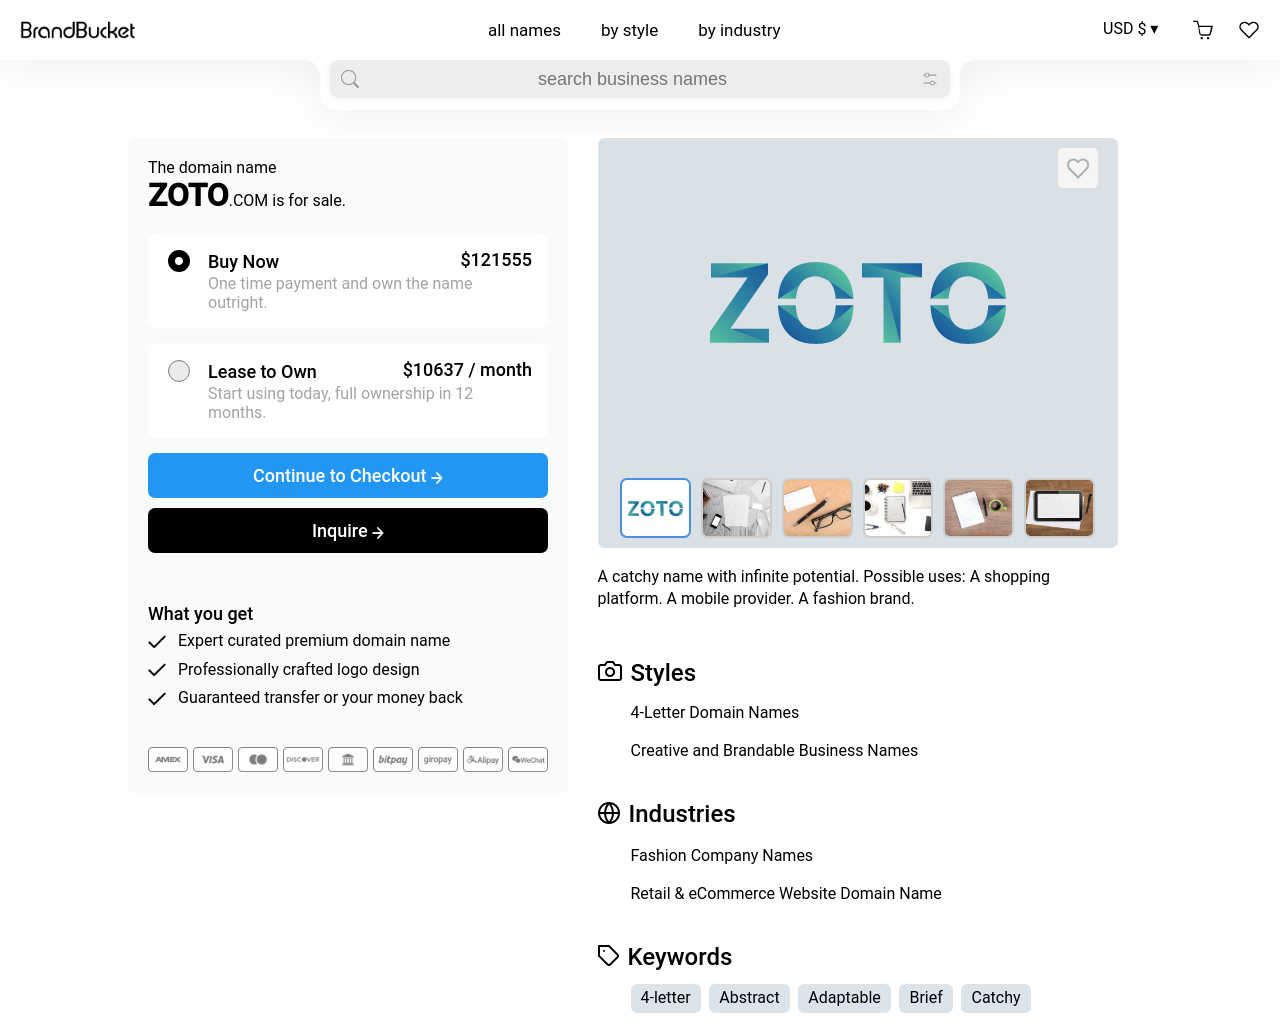 zoto.com